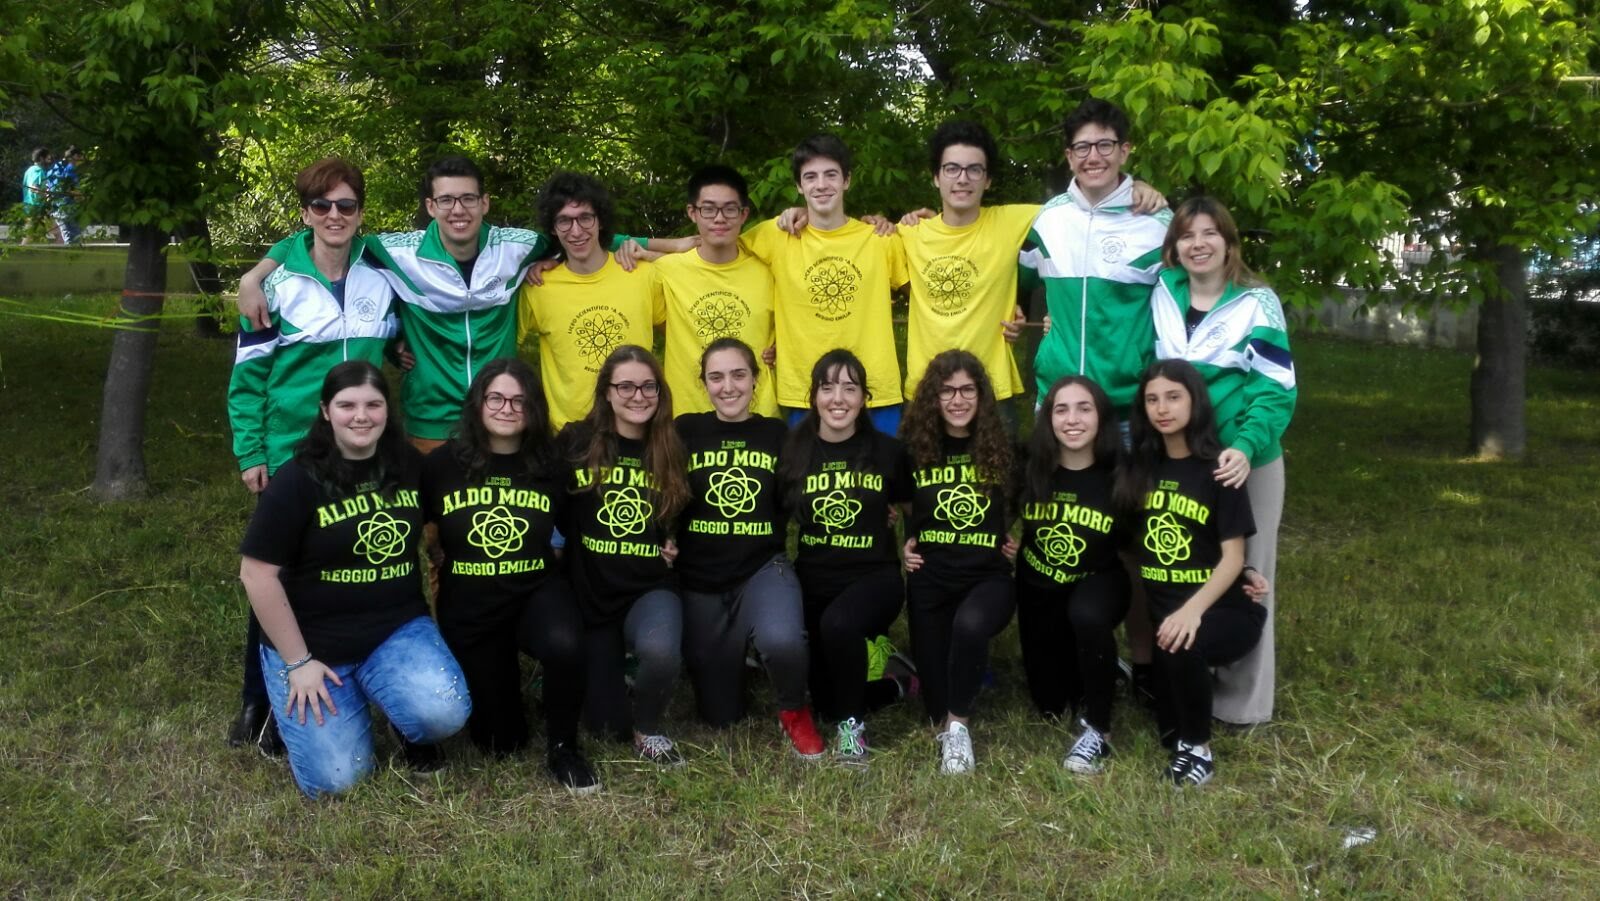 Squadra Liceo Moro - Reggio Emilia - 2018